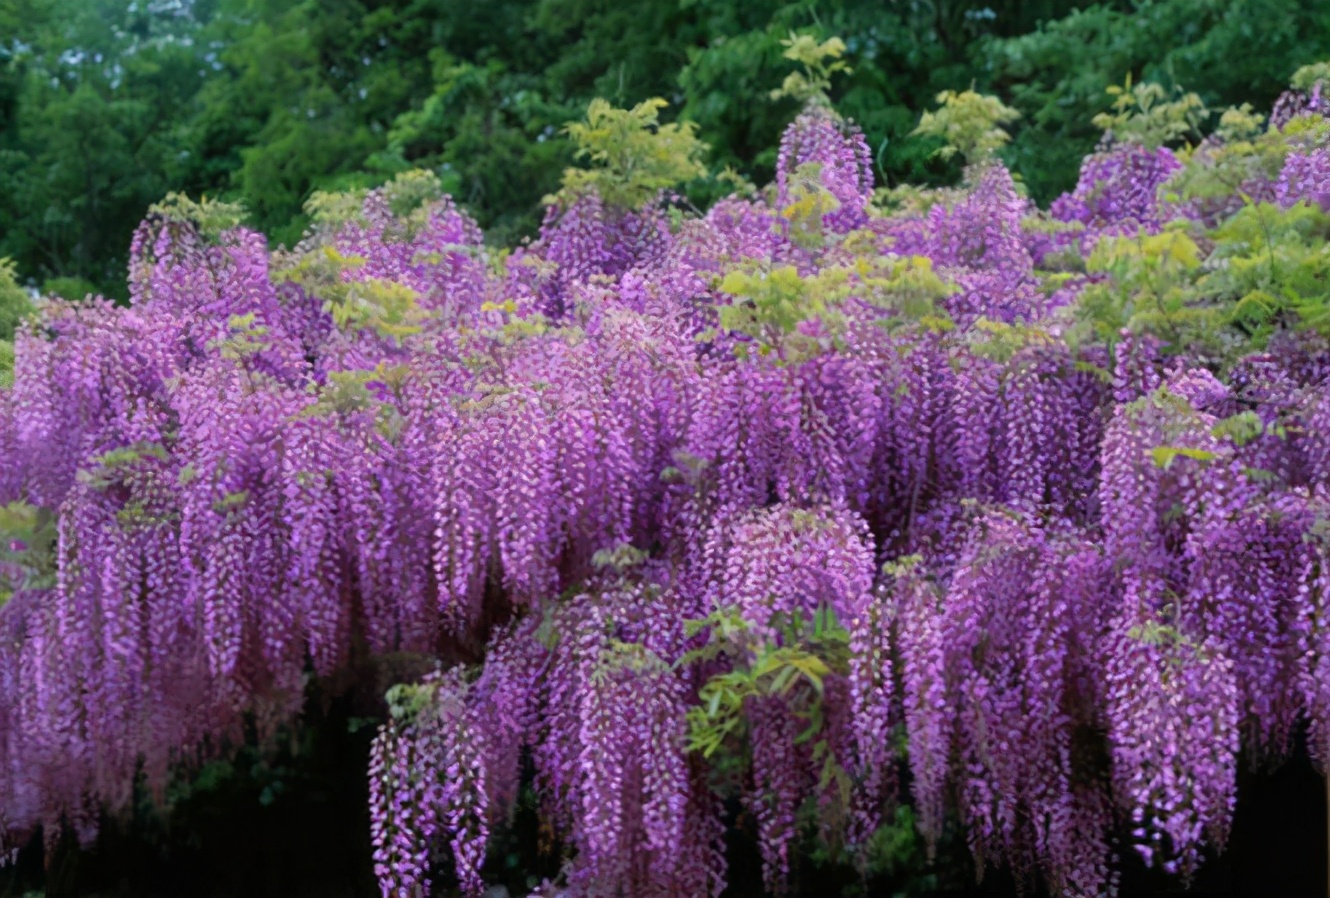 紫藤树在日本 库存图片. 图片 包括有 公园, 工厂, 结构树, 豆类, 系列, 日本, 紫藤, 种类 - 143573965